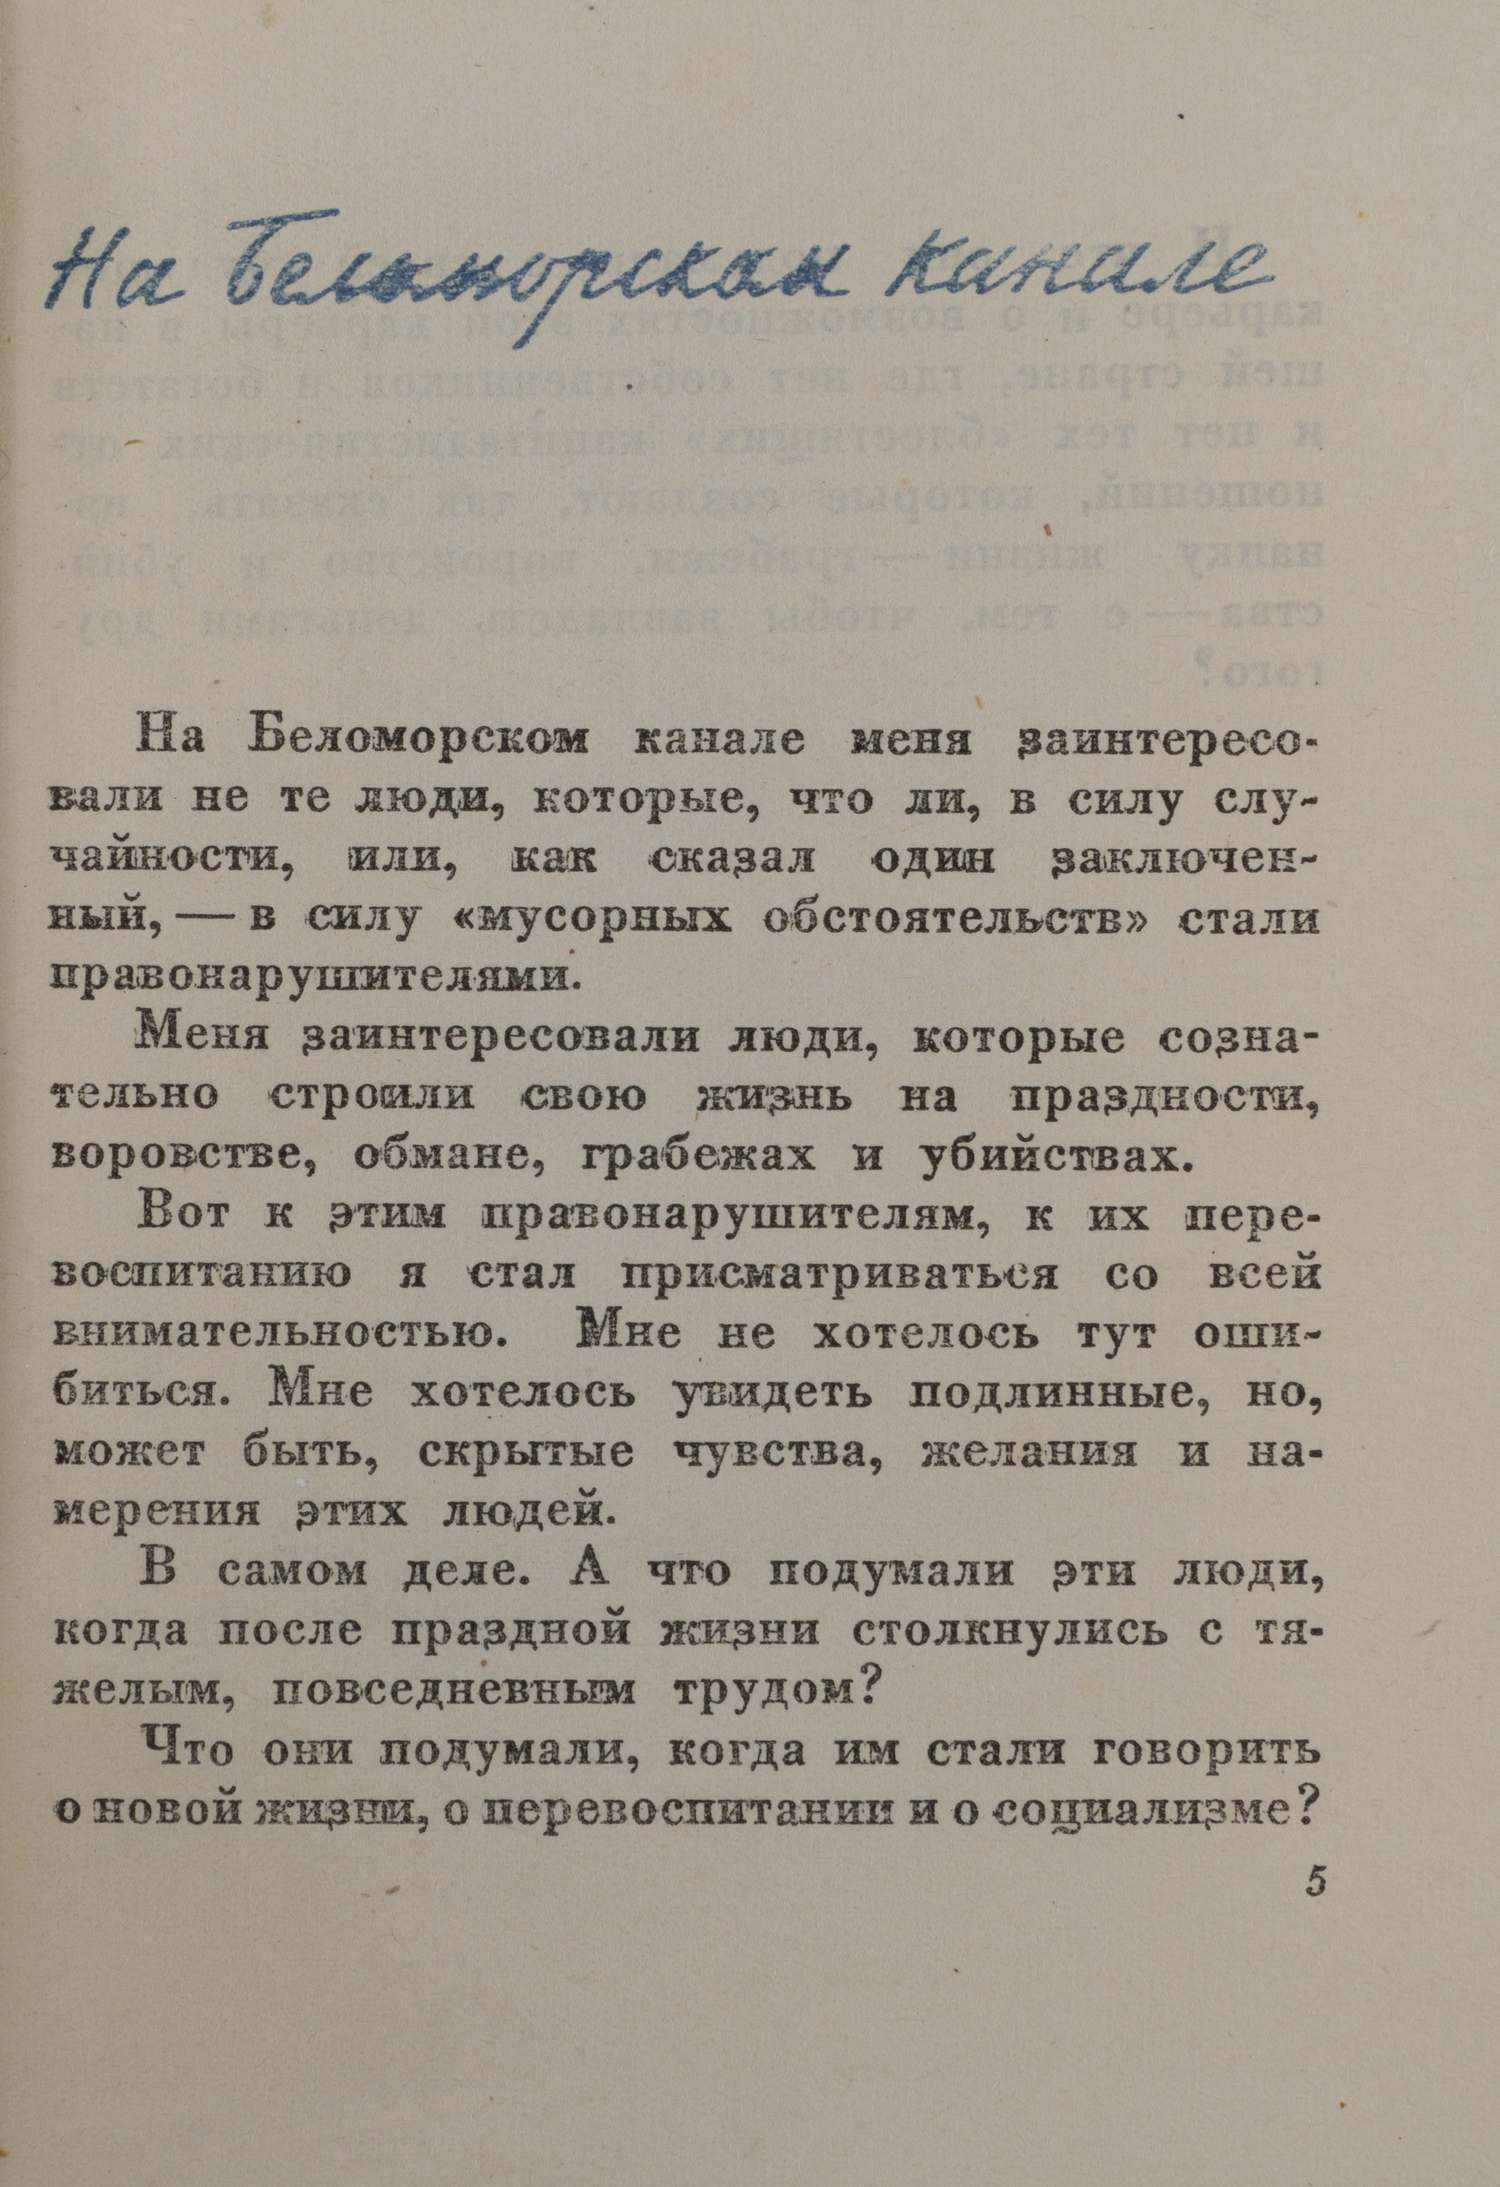 Зощенко М. История одной жизни (Л., 1934).